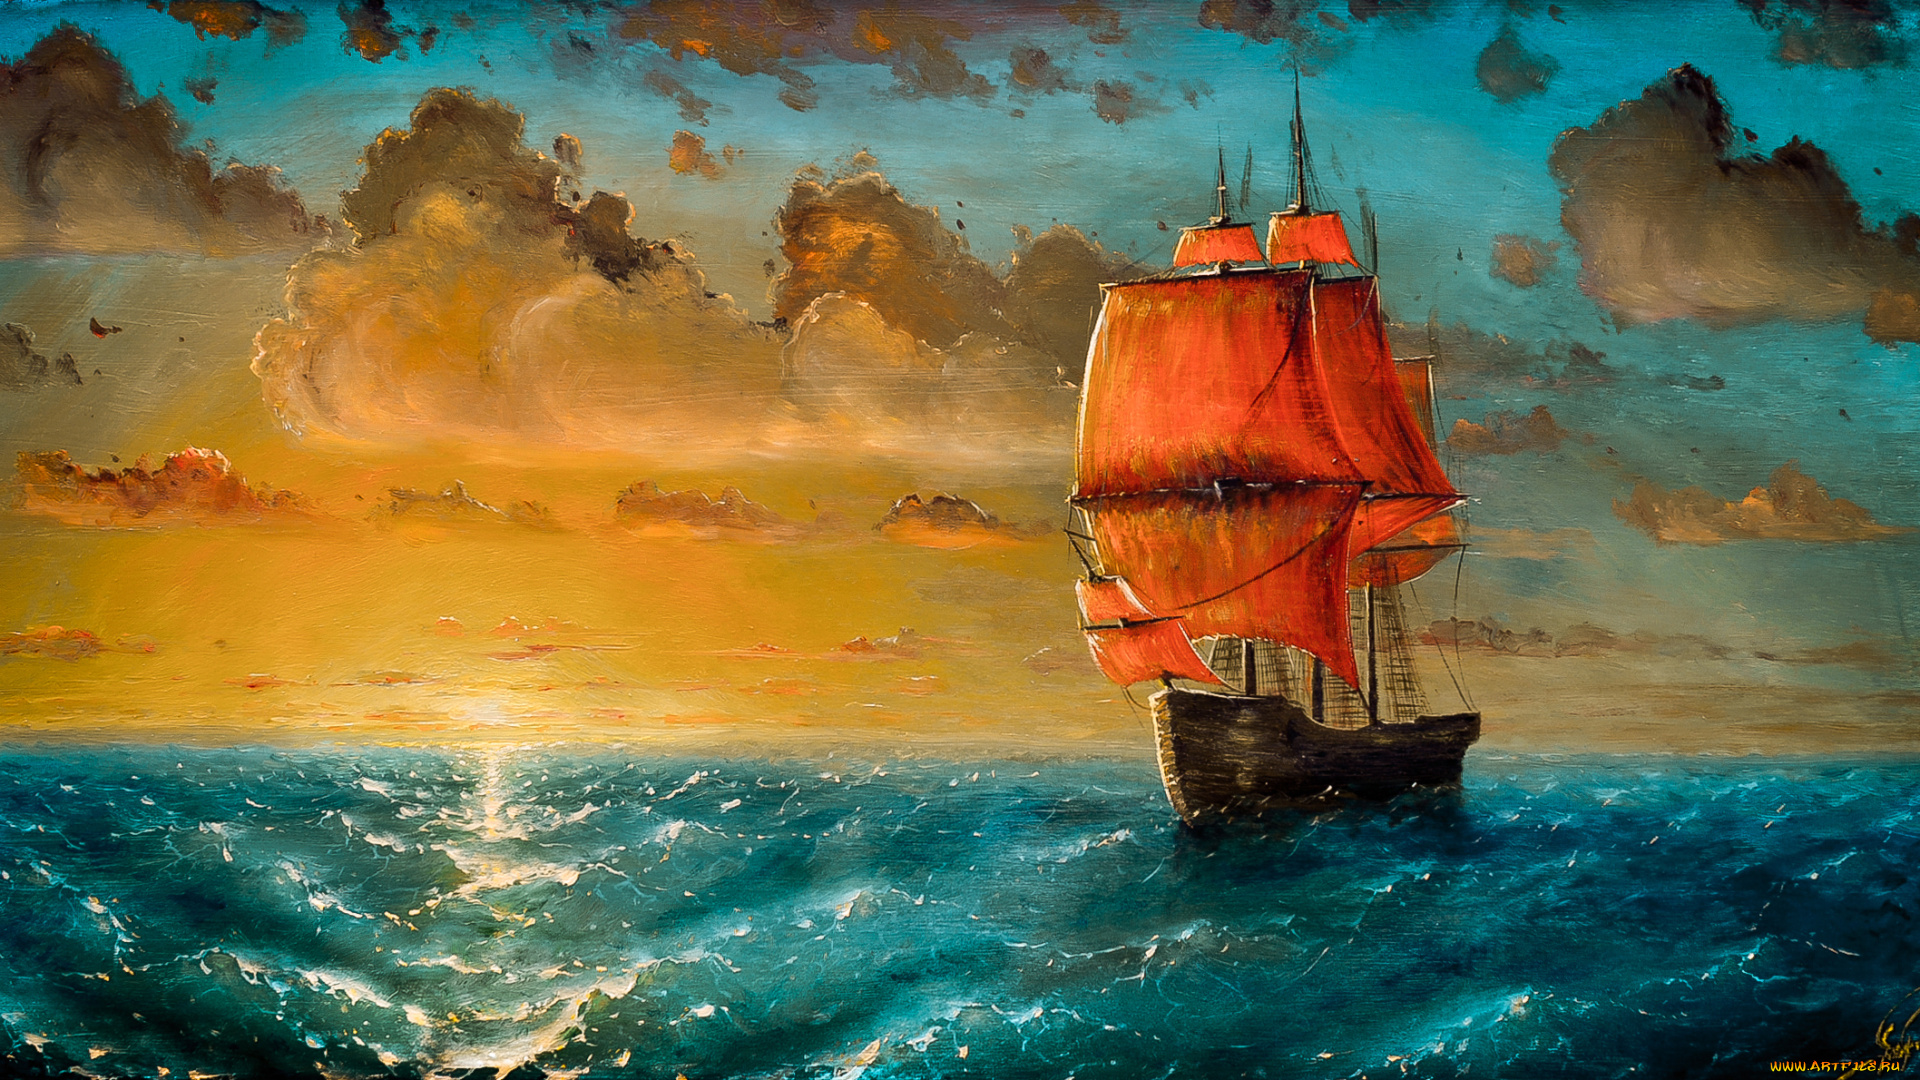 рисованное, живопись, облака, волны, закат, море, парусник, арт, корабль